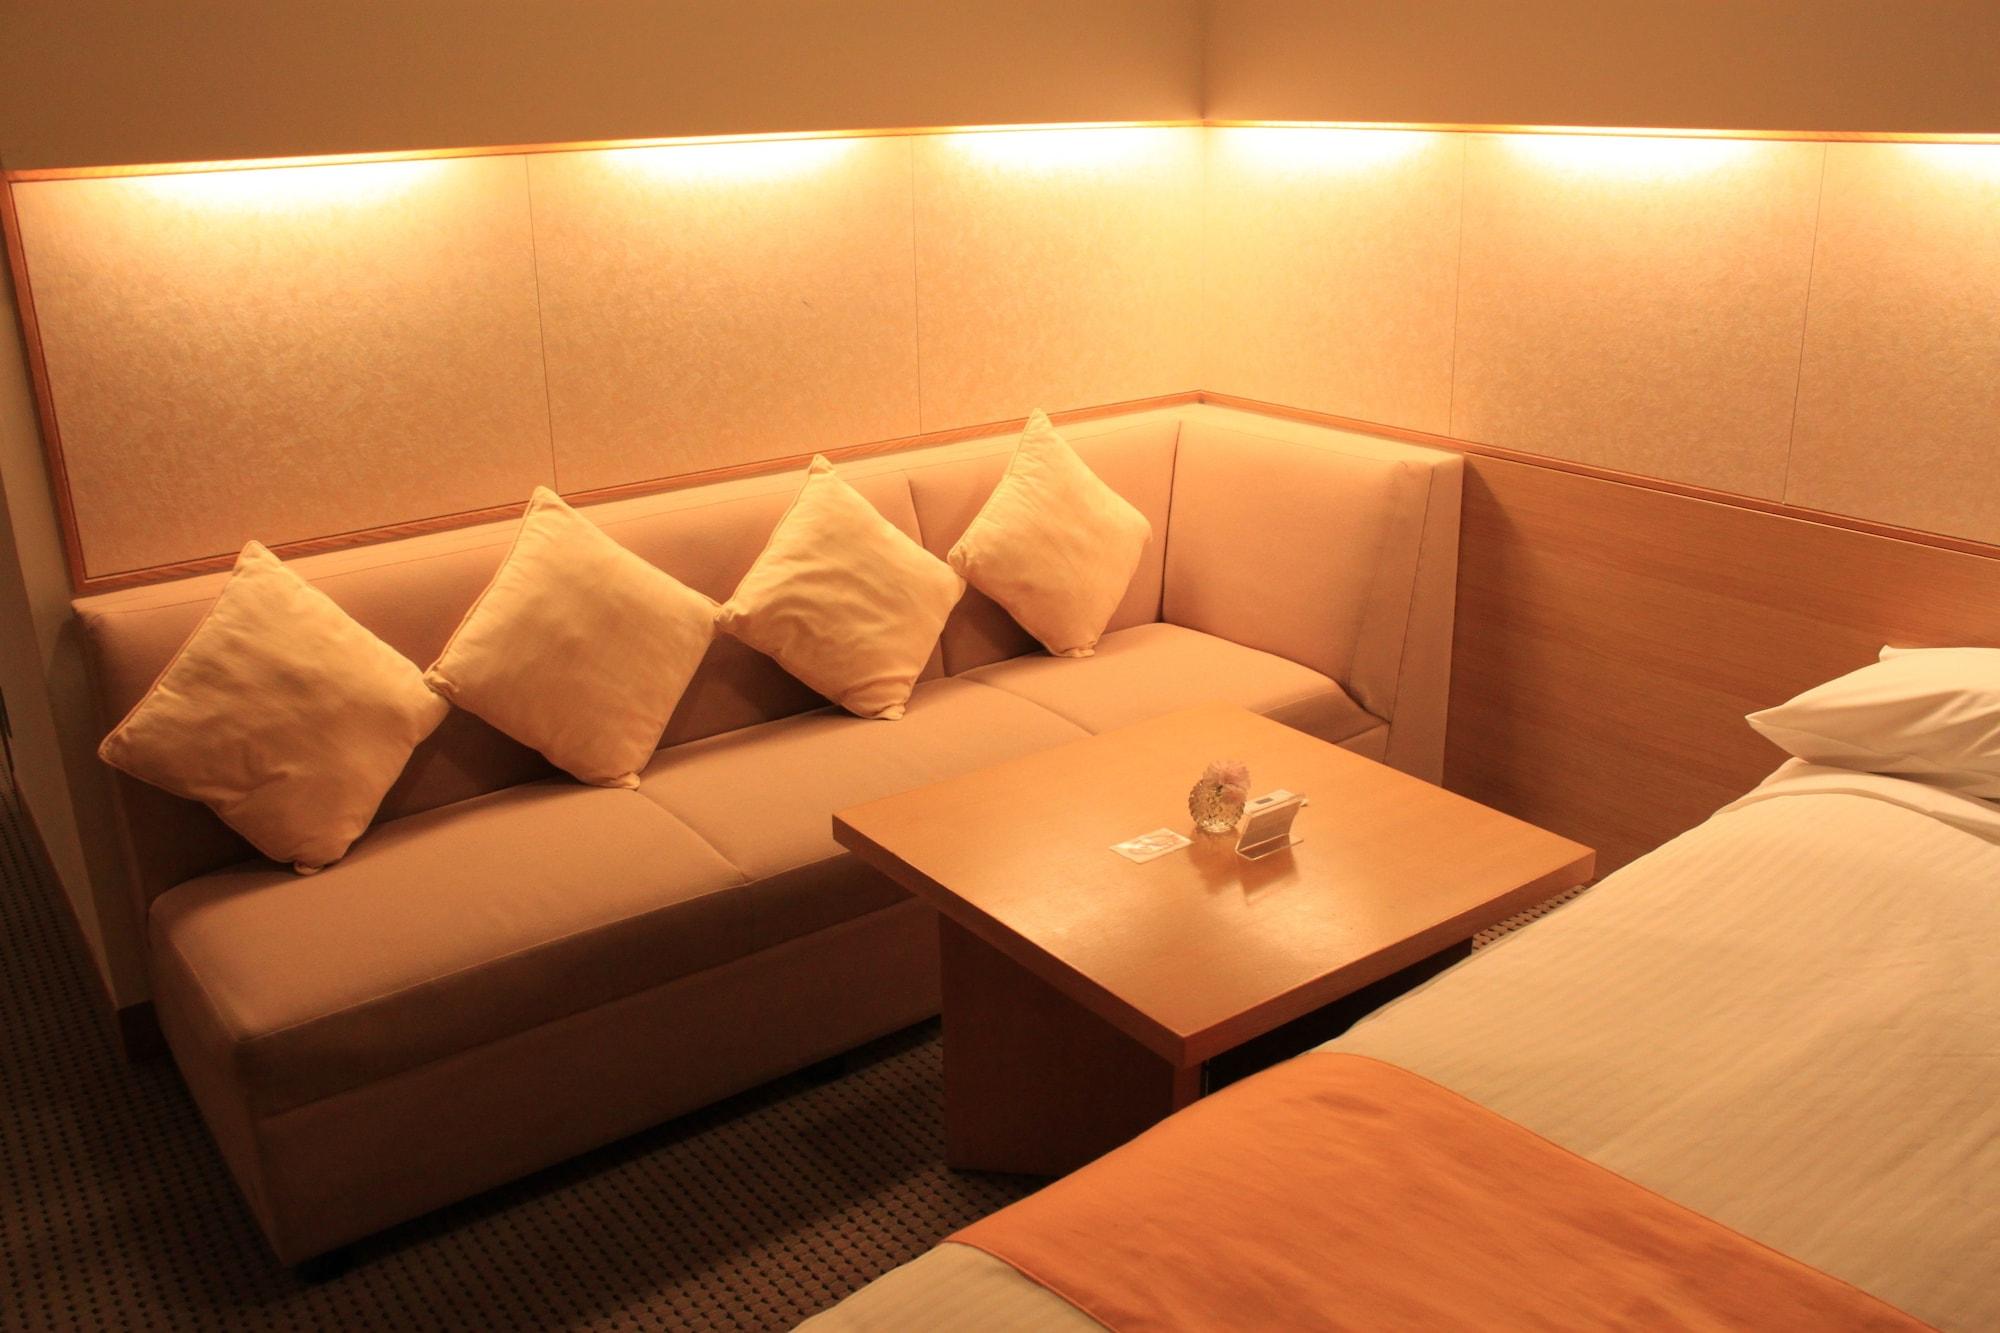 Hotel Sosei Sapporo Mgallery Collection Экстерьер фото